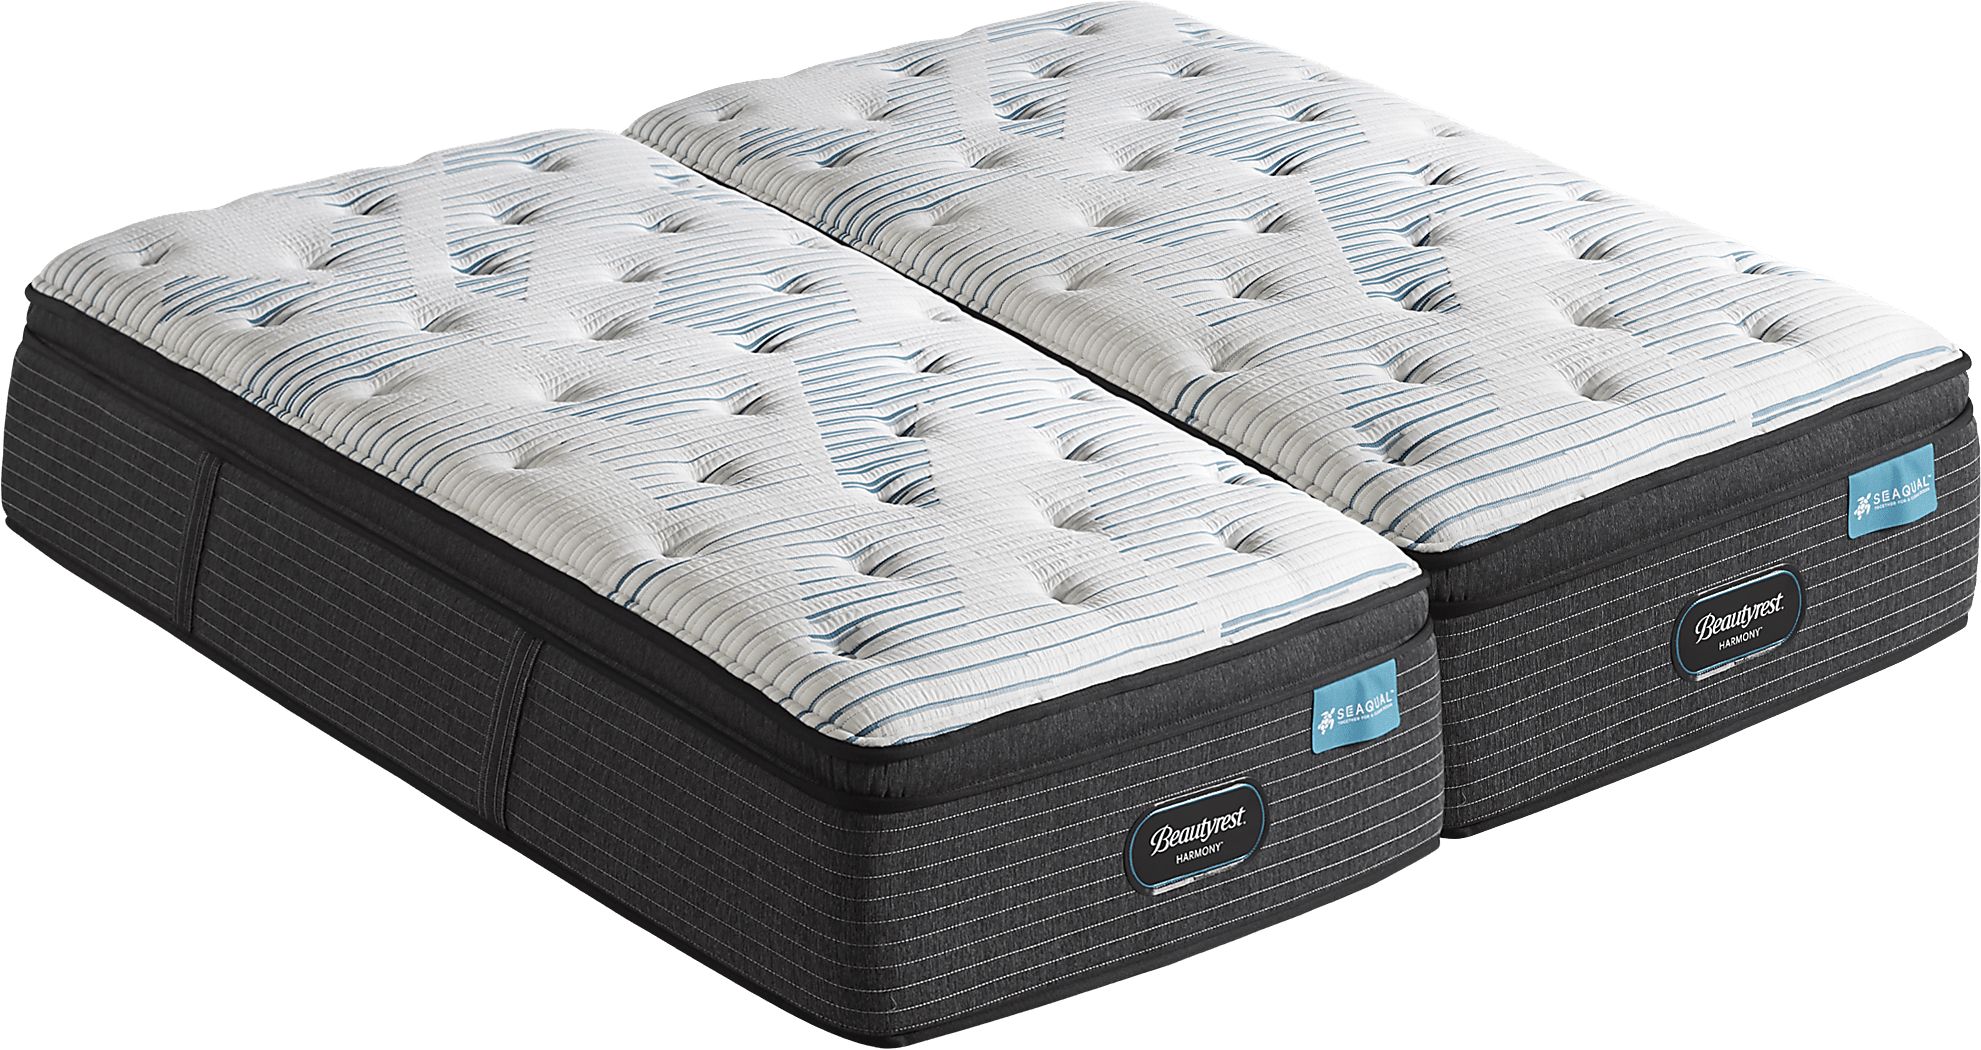 simmons beautyrest split king 3000lm mattress